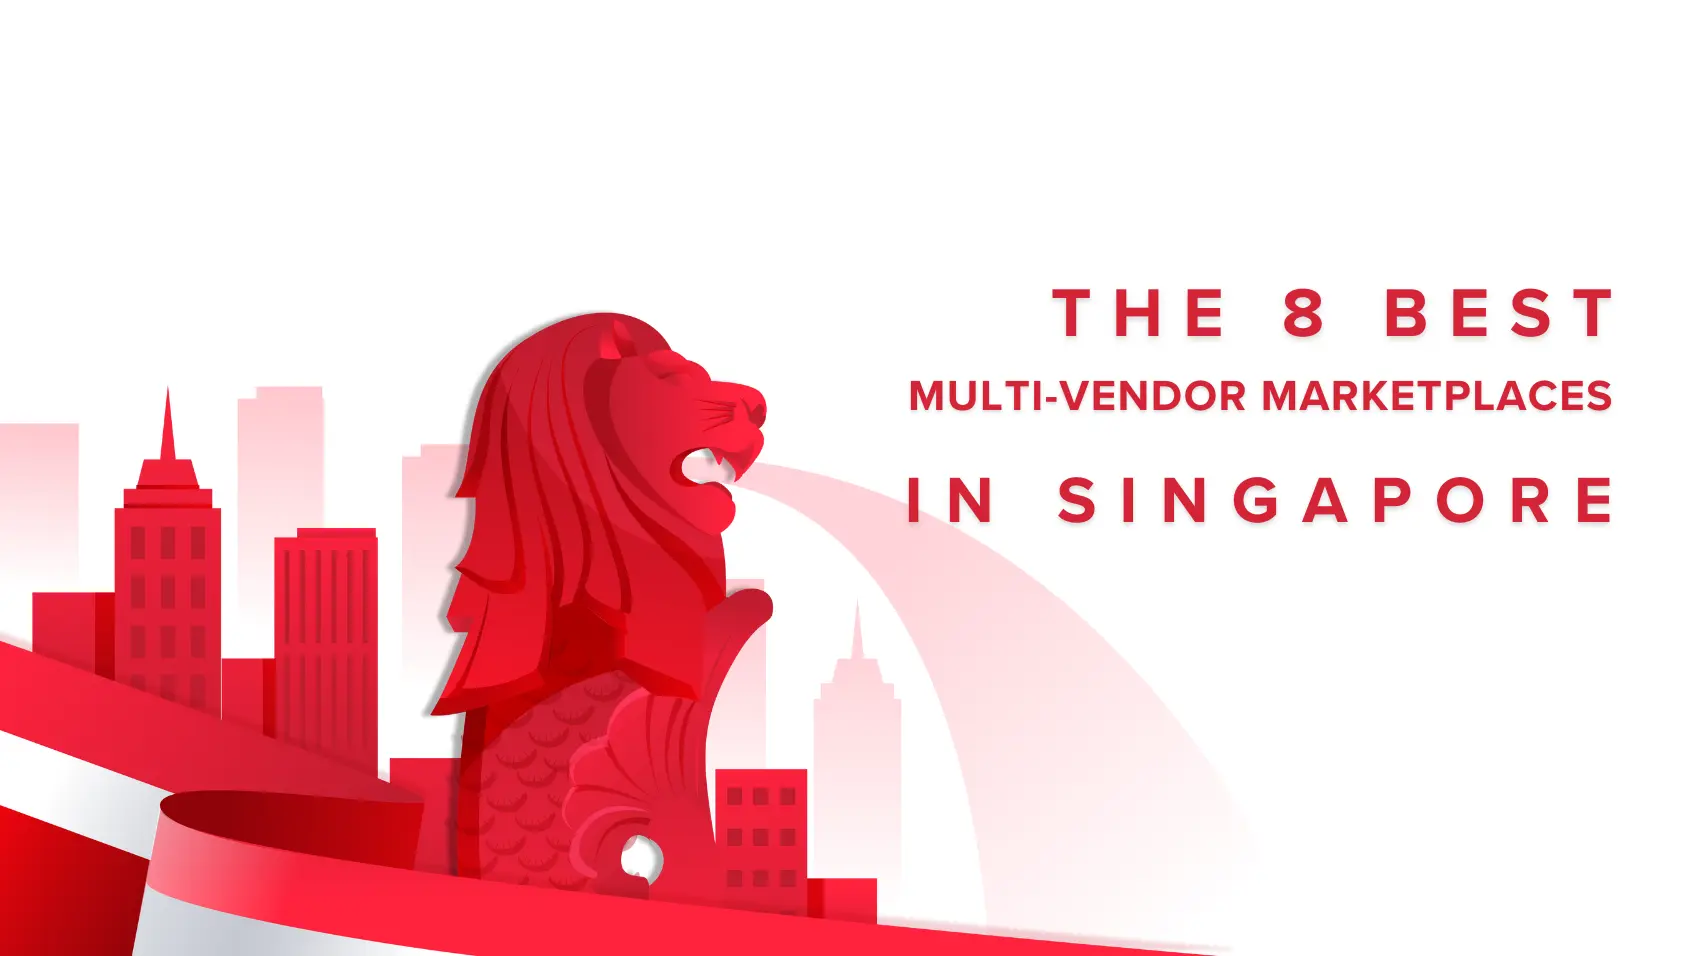 The 8 Best Multi-vendor Marketplaces in Singapore